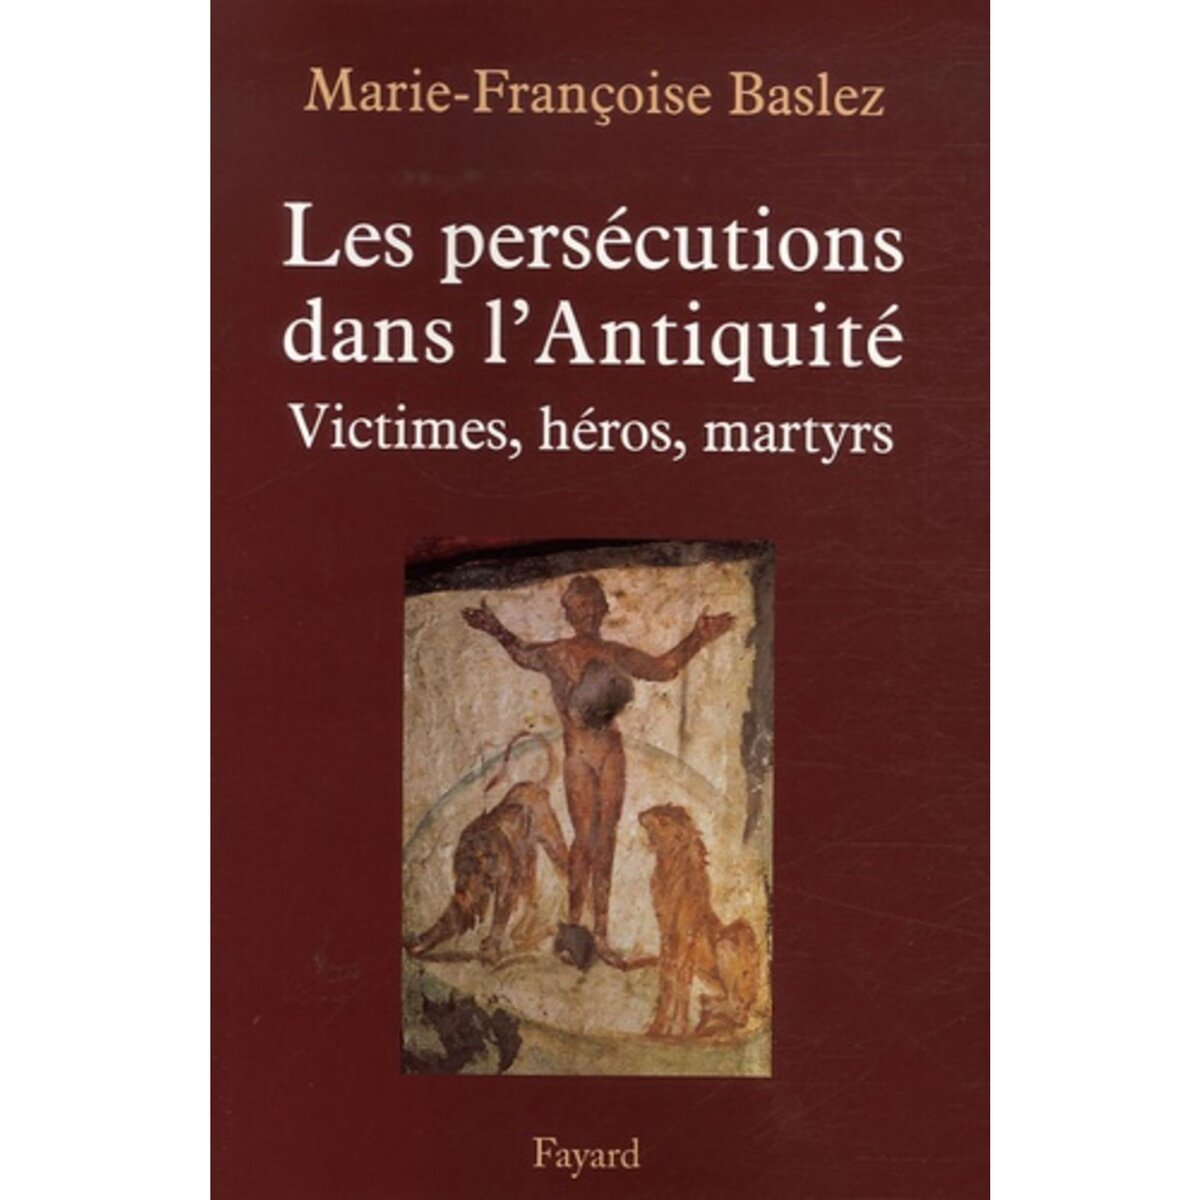  LES PERSECUTIONS DANS L'ANTIQUITE. VICTIMES, HEROS, MARTYRES, Baslez Marie-Françoise